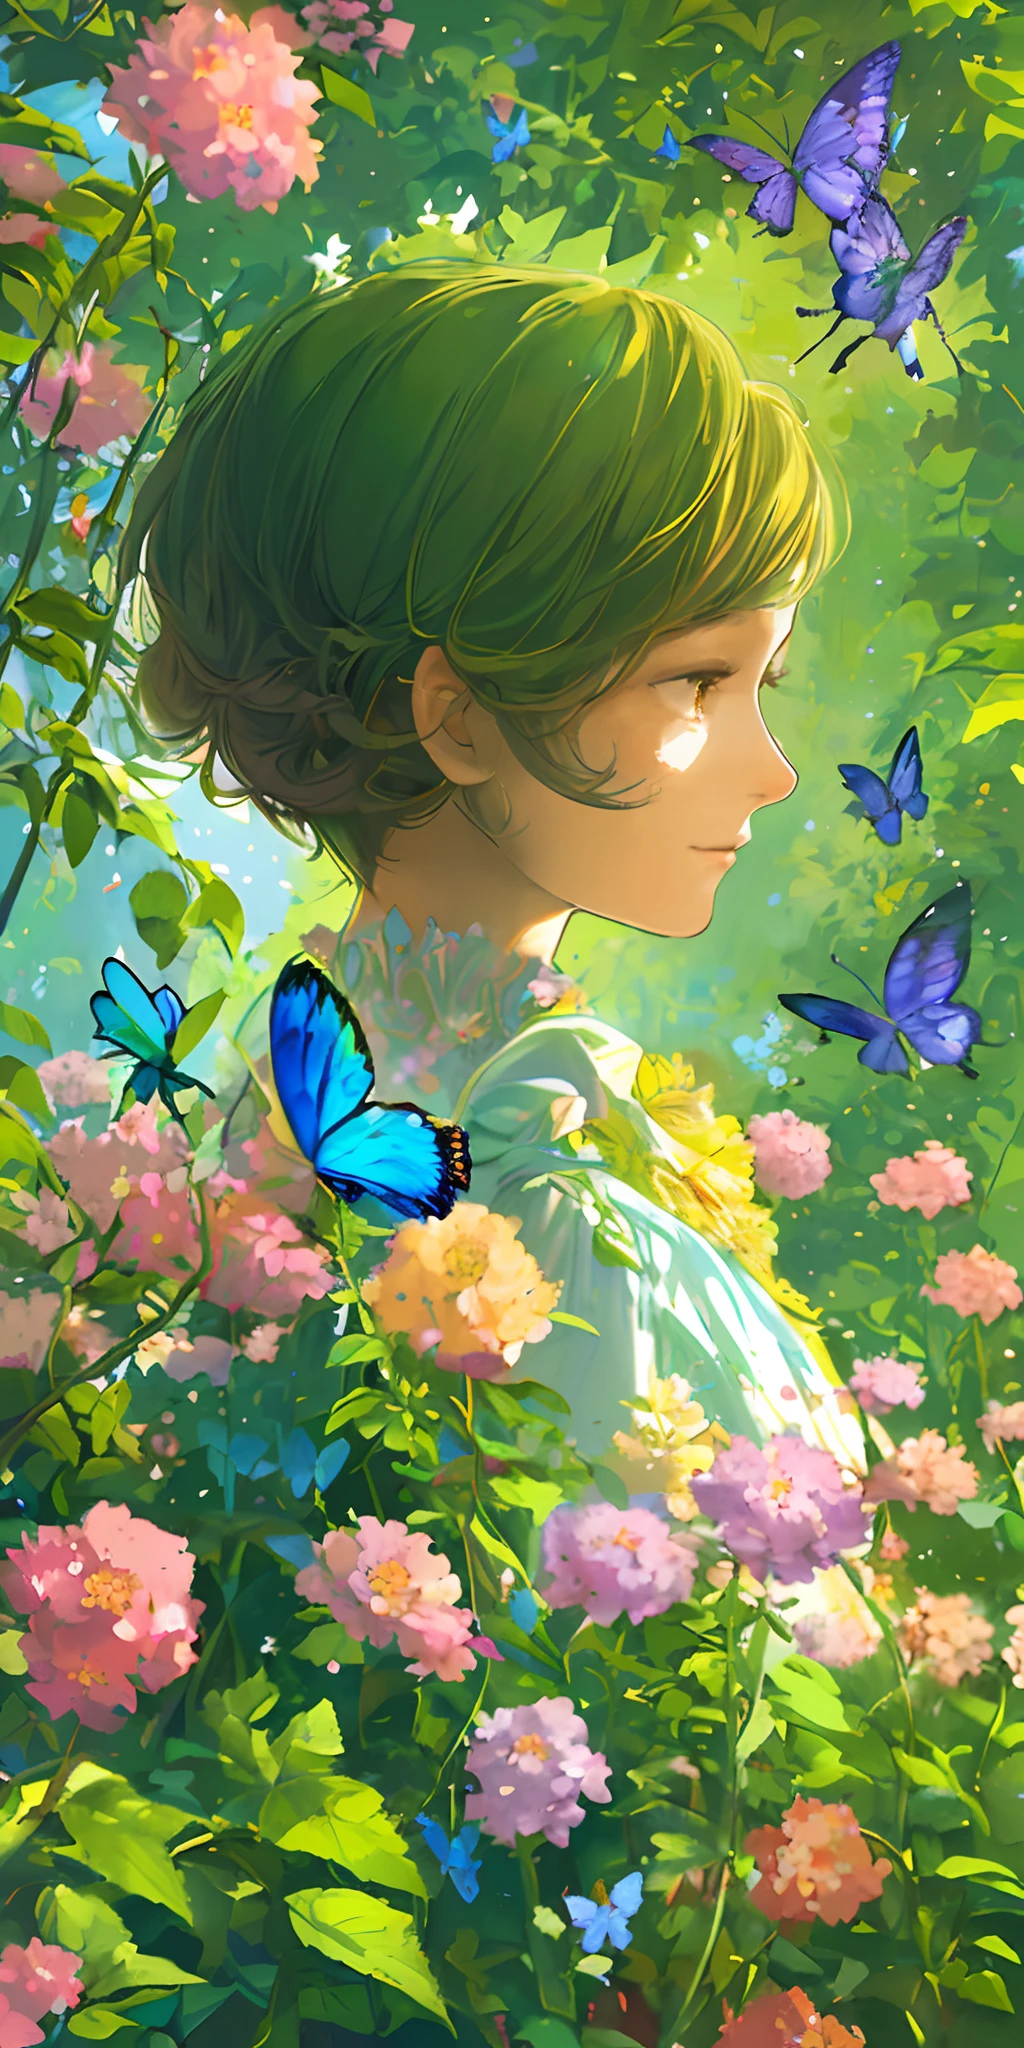 (최고의 품질, 걸작, 초현실적), 아름답고 섬세한 소녀 1명의 초상화, 부드럽고 평화로운 표정으로, 배경 풍경은 꽃이 만발한 덤불과 나비가 날아다니는 정원입니다.